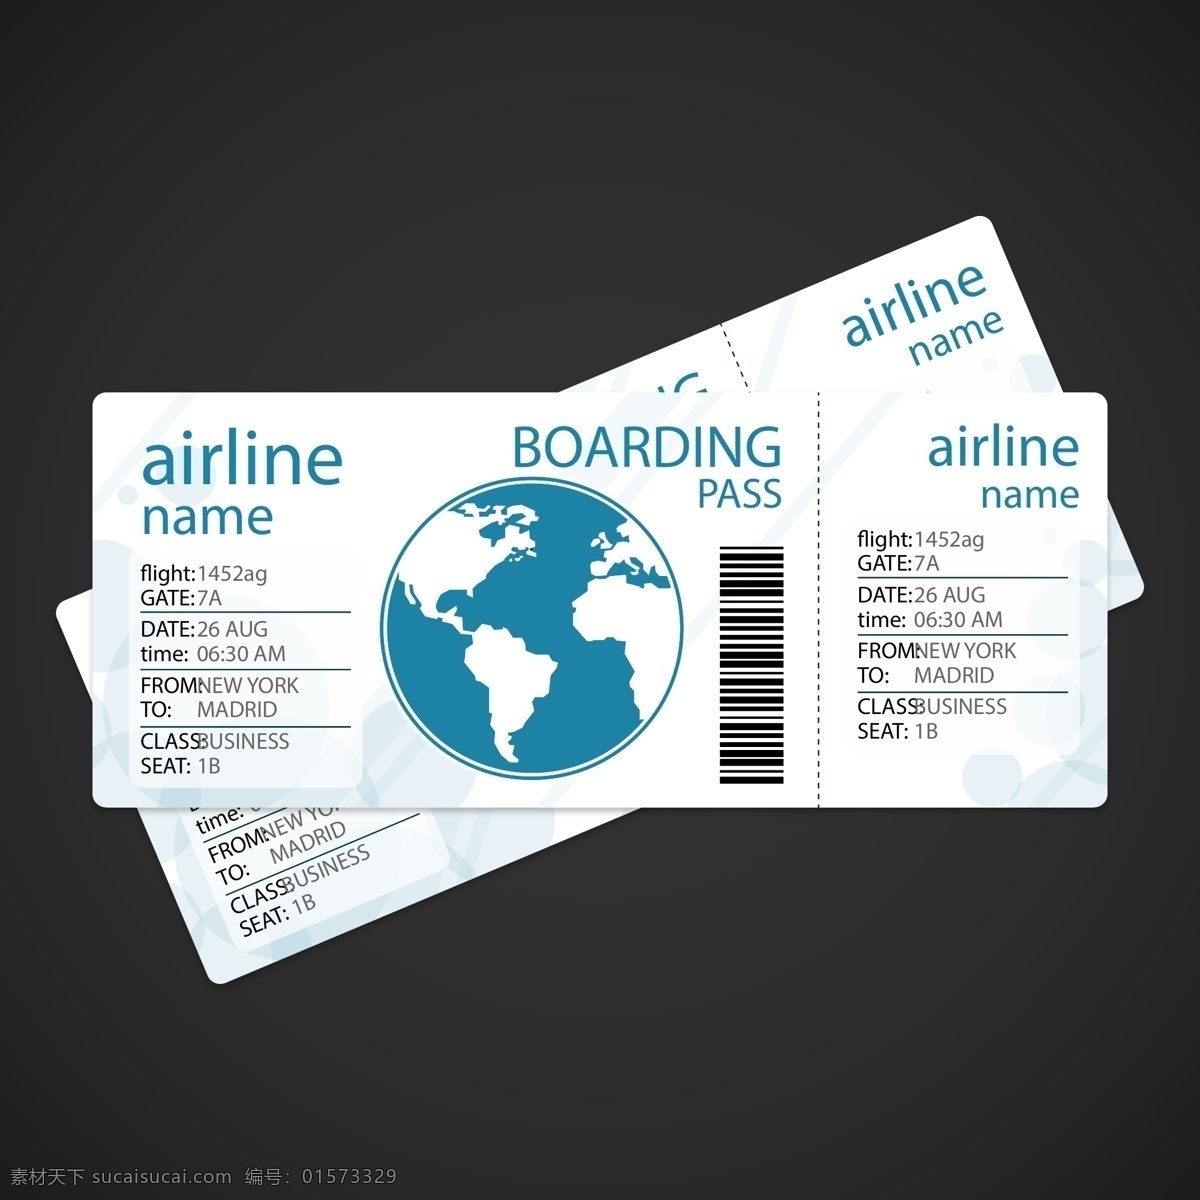 机票设计样板 飞机运输 假日车票 登机牌 机票 门票 地球 旅客 旅游 旅程 休假 黑色